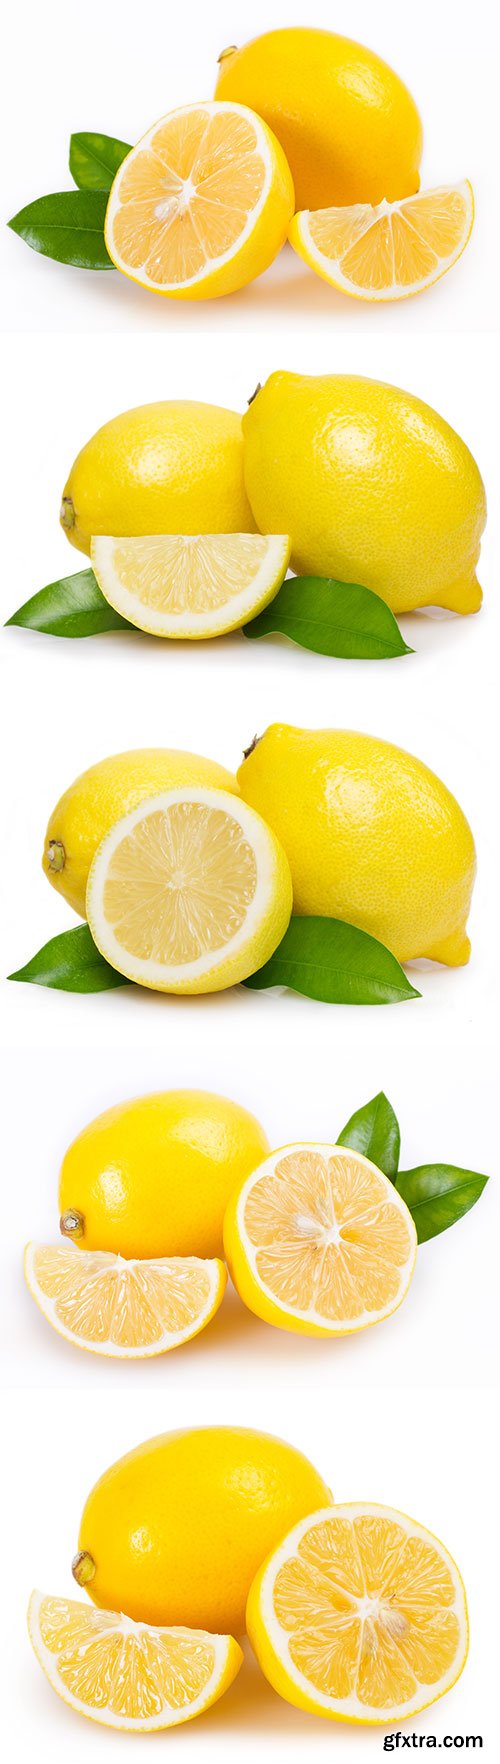 Lemon Isolated - 10xJPGs